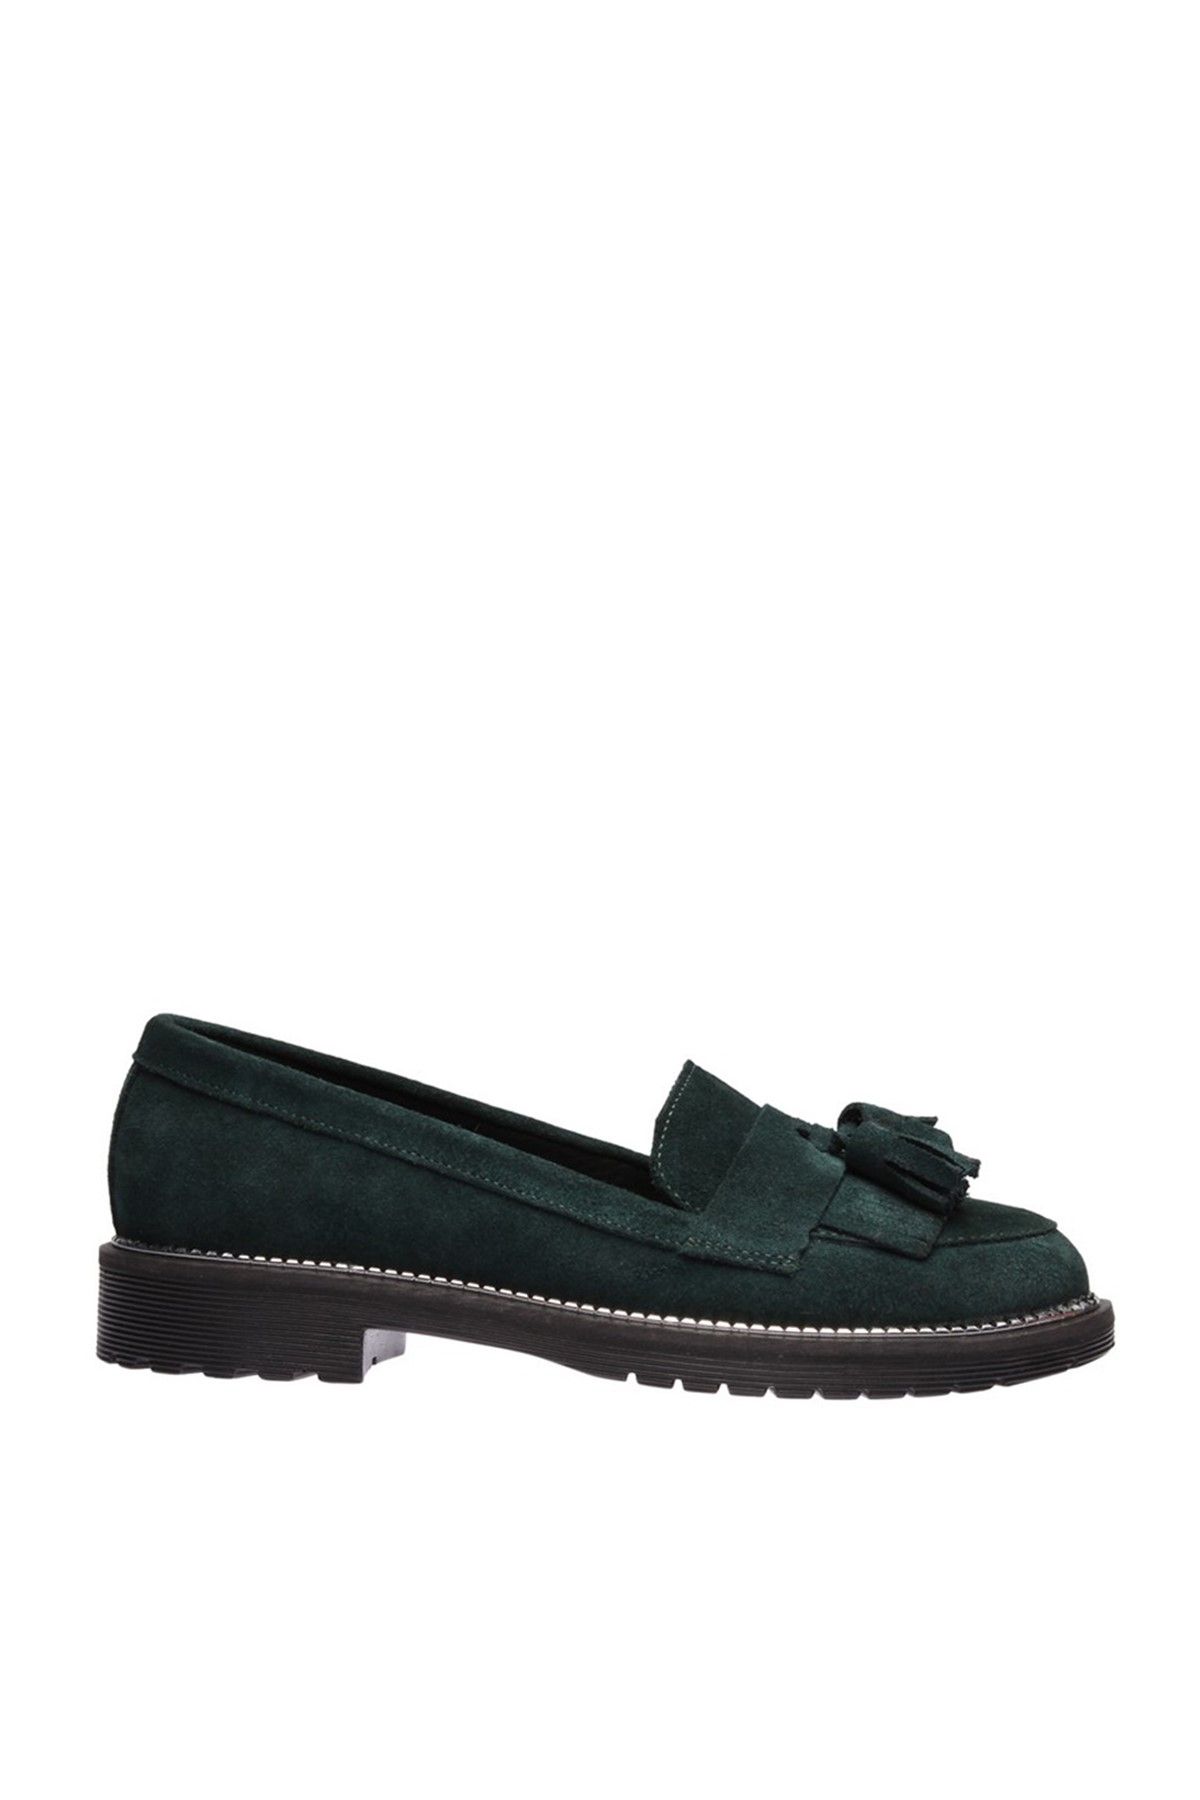 İnci Hakiki Deri Koyu Yeşil Kadın Ayakkabı 120130001901